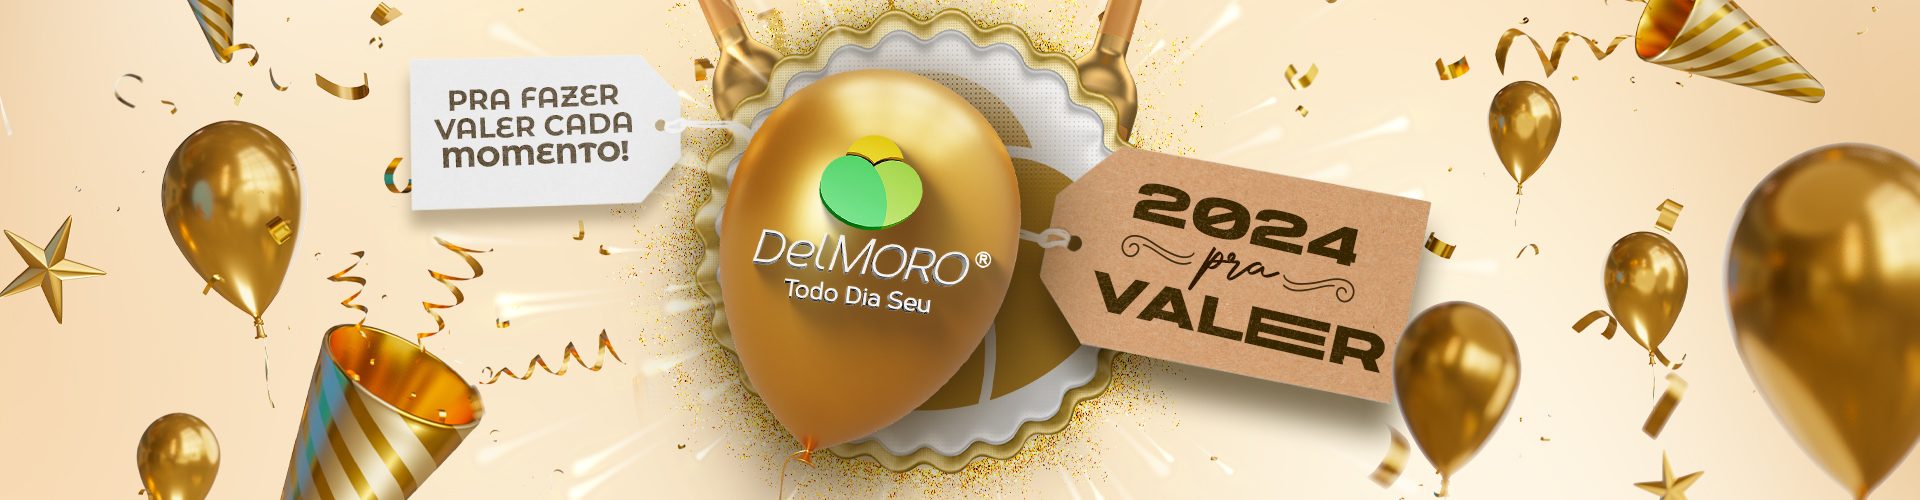 DelMoro_Ano-novo_banner_Desk